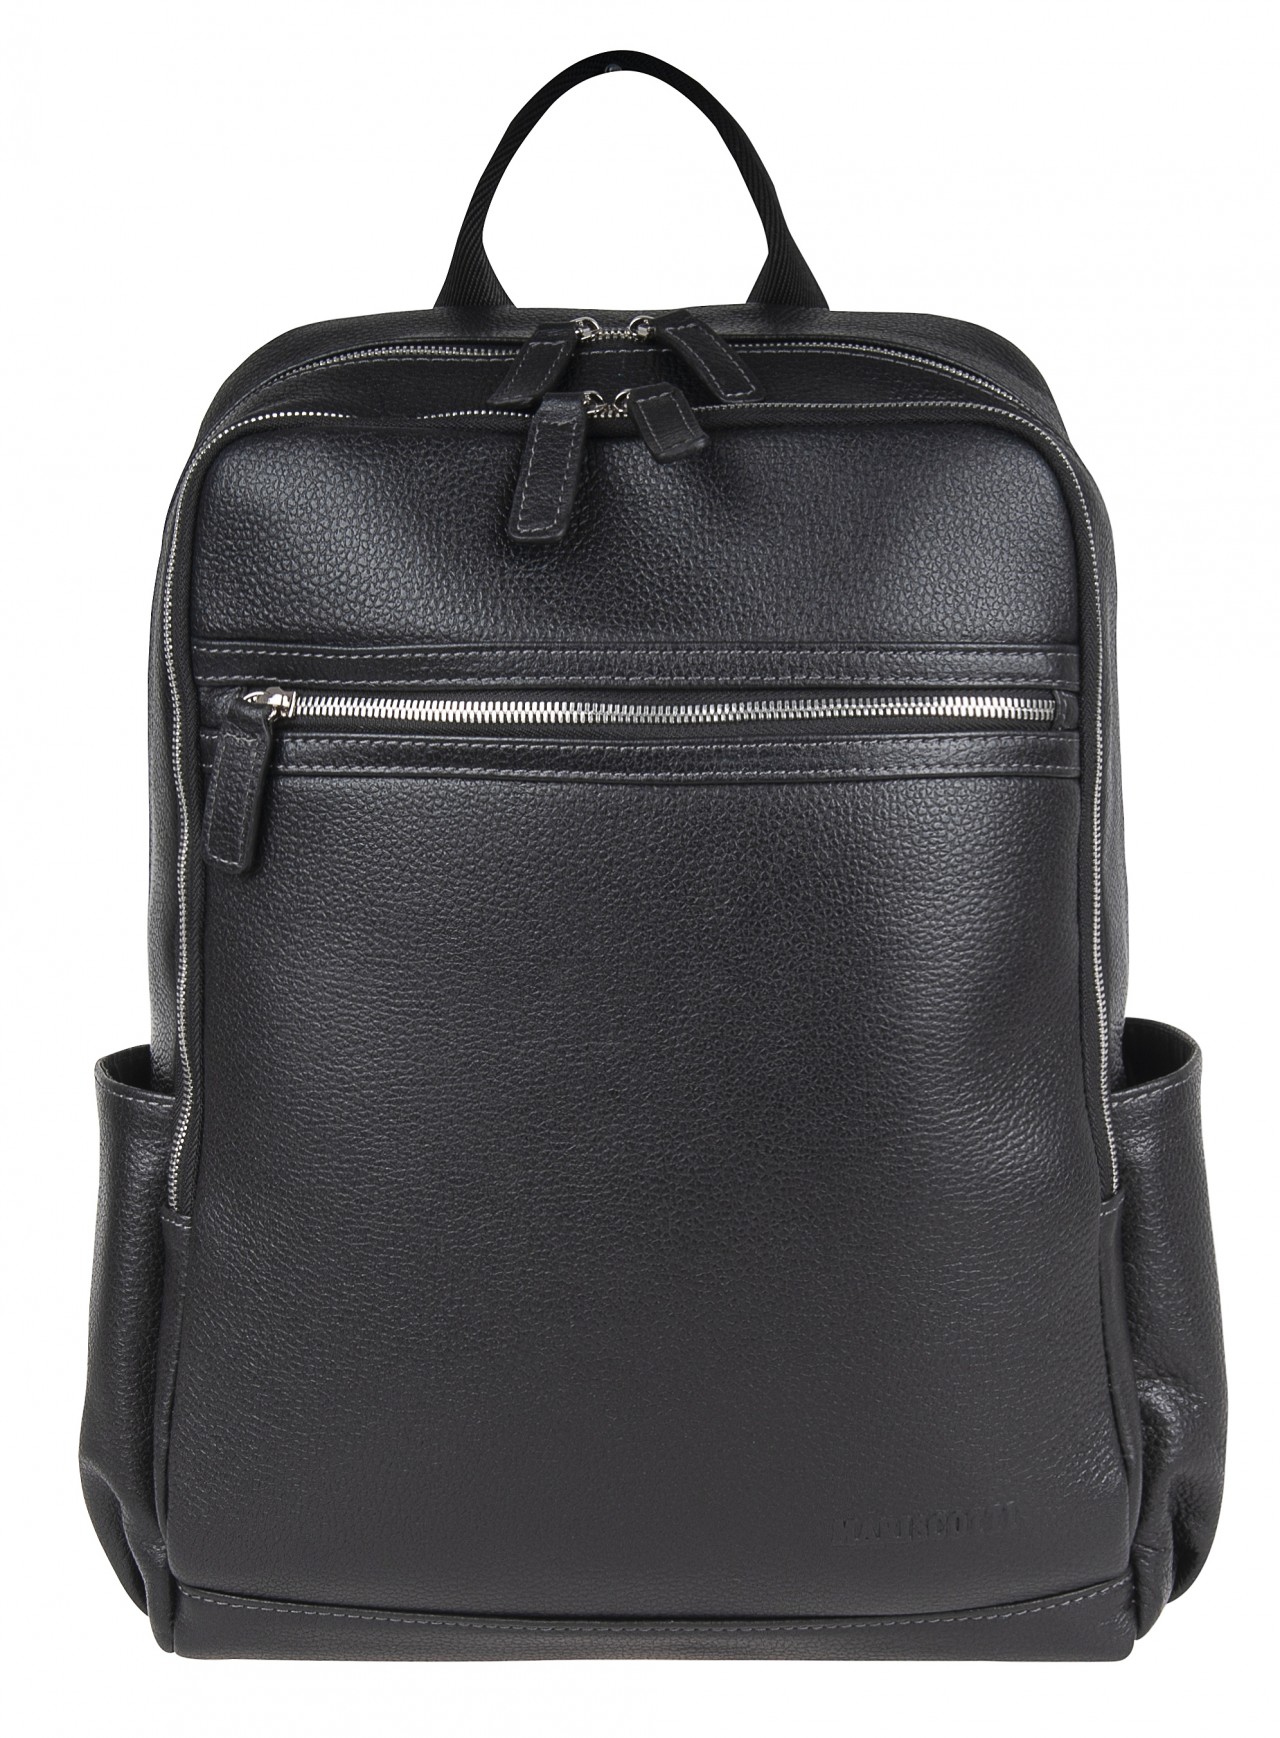 Рюкзак мужской Franchesco Mariscotti 2-718 черный, 39х28х13 см